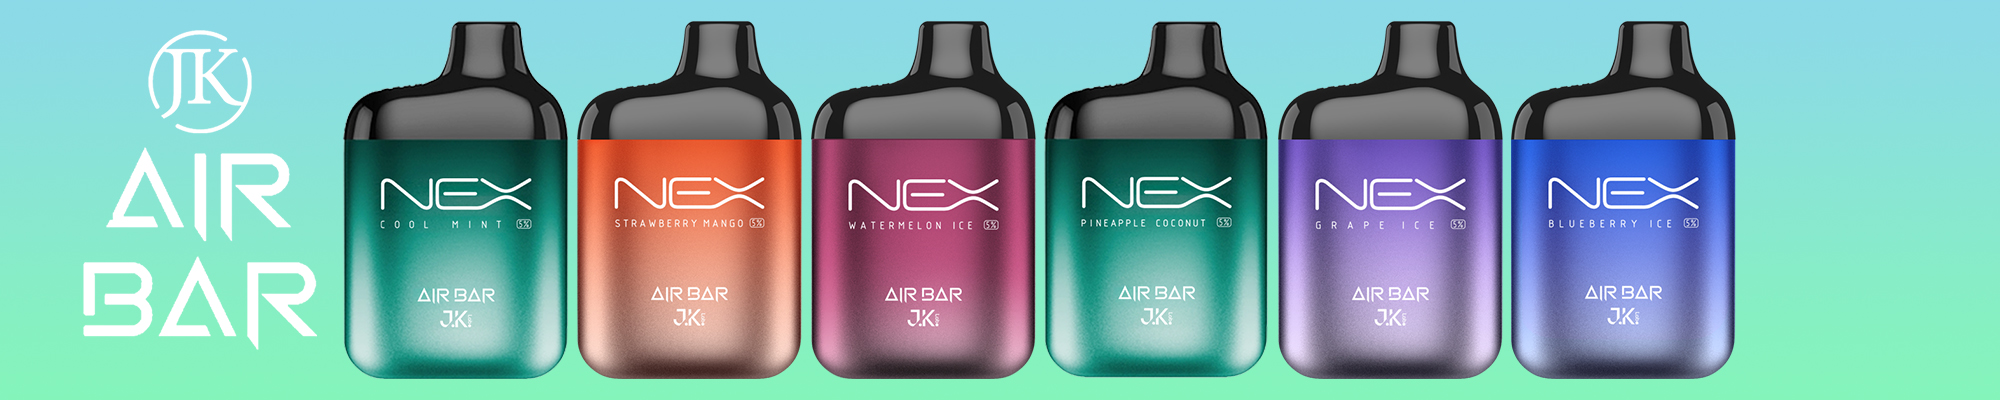 Air Bar Nex Banner